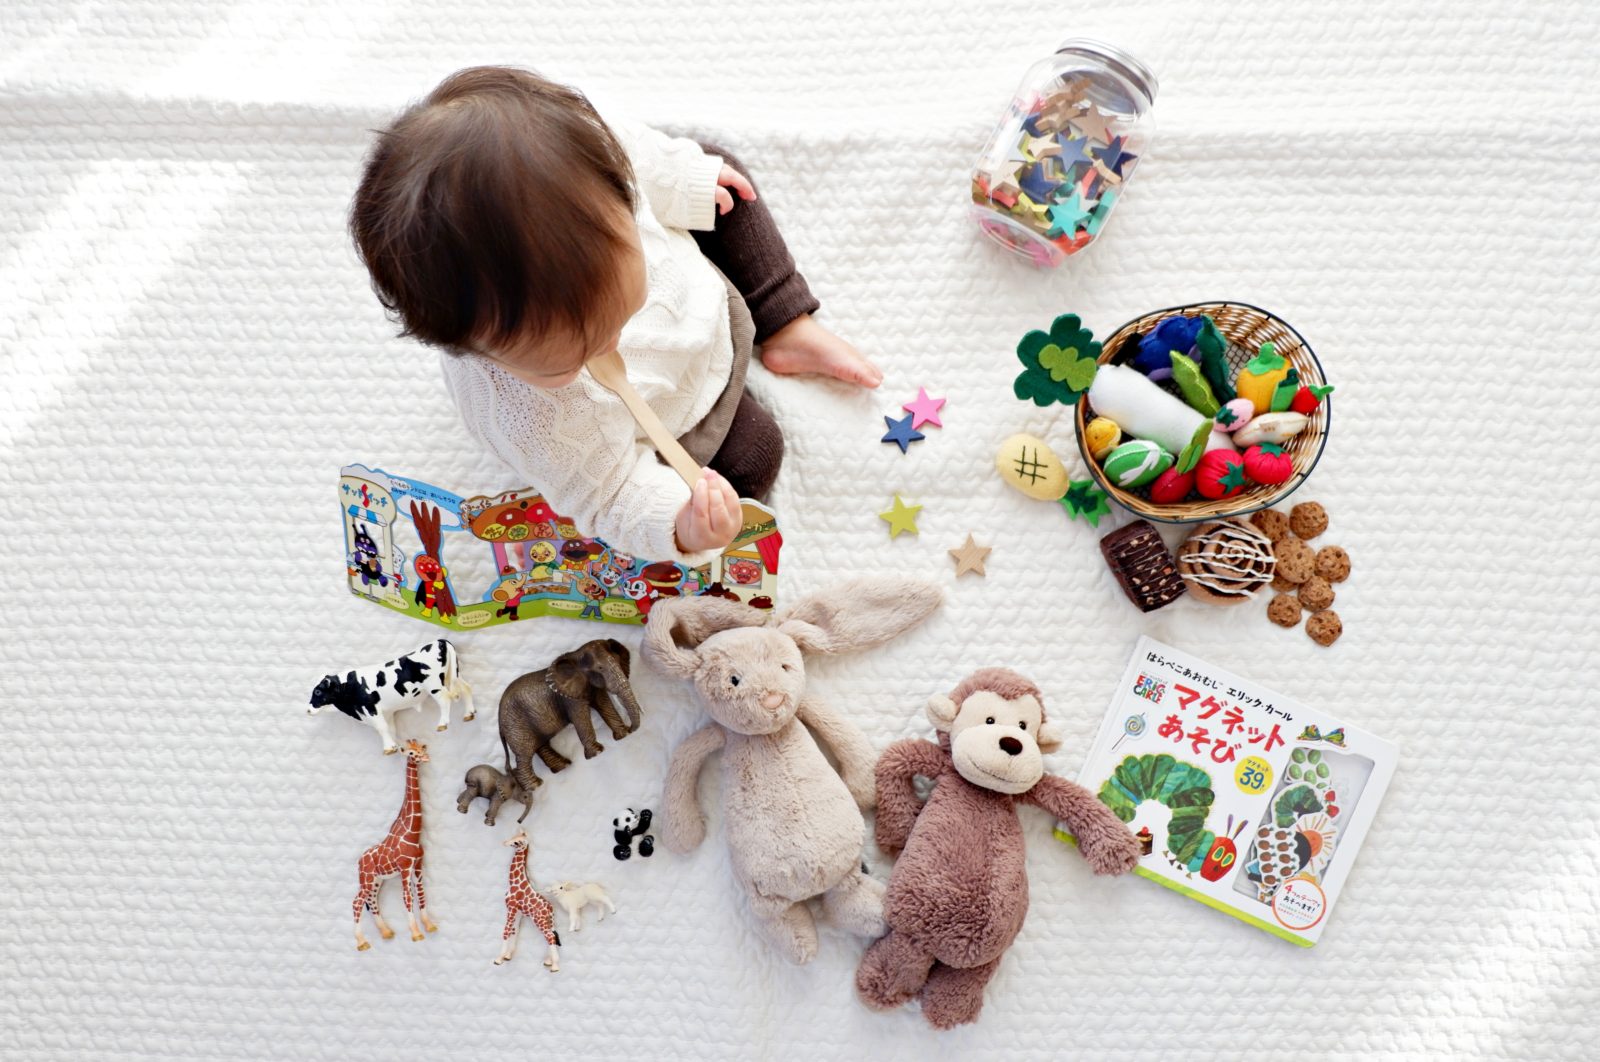 50 Indoor Activities To Do With Preschoolers